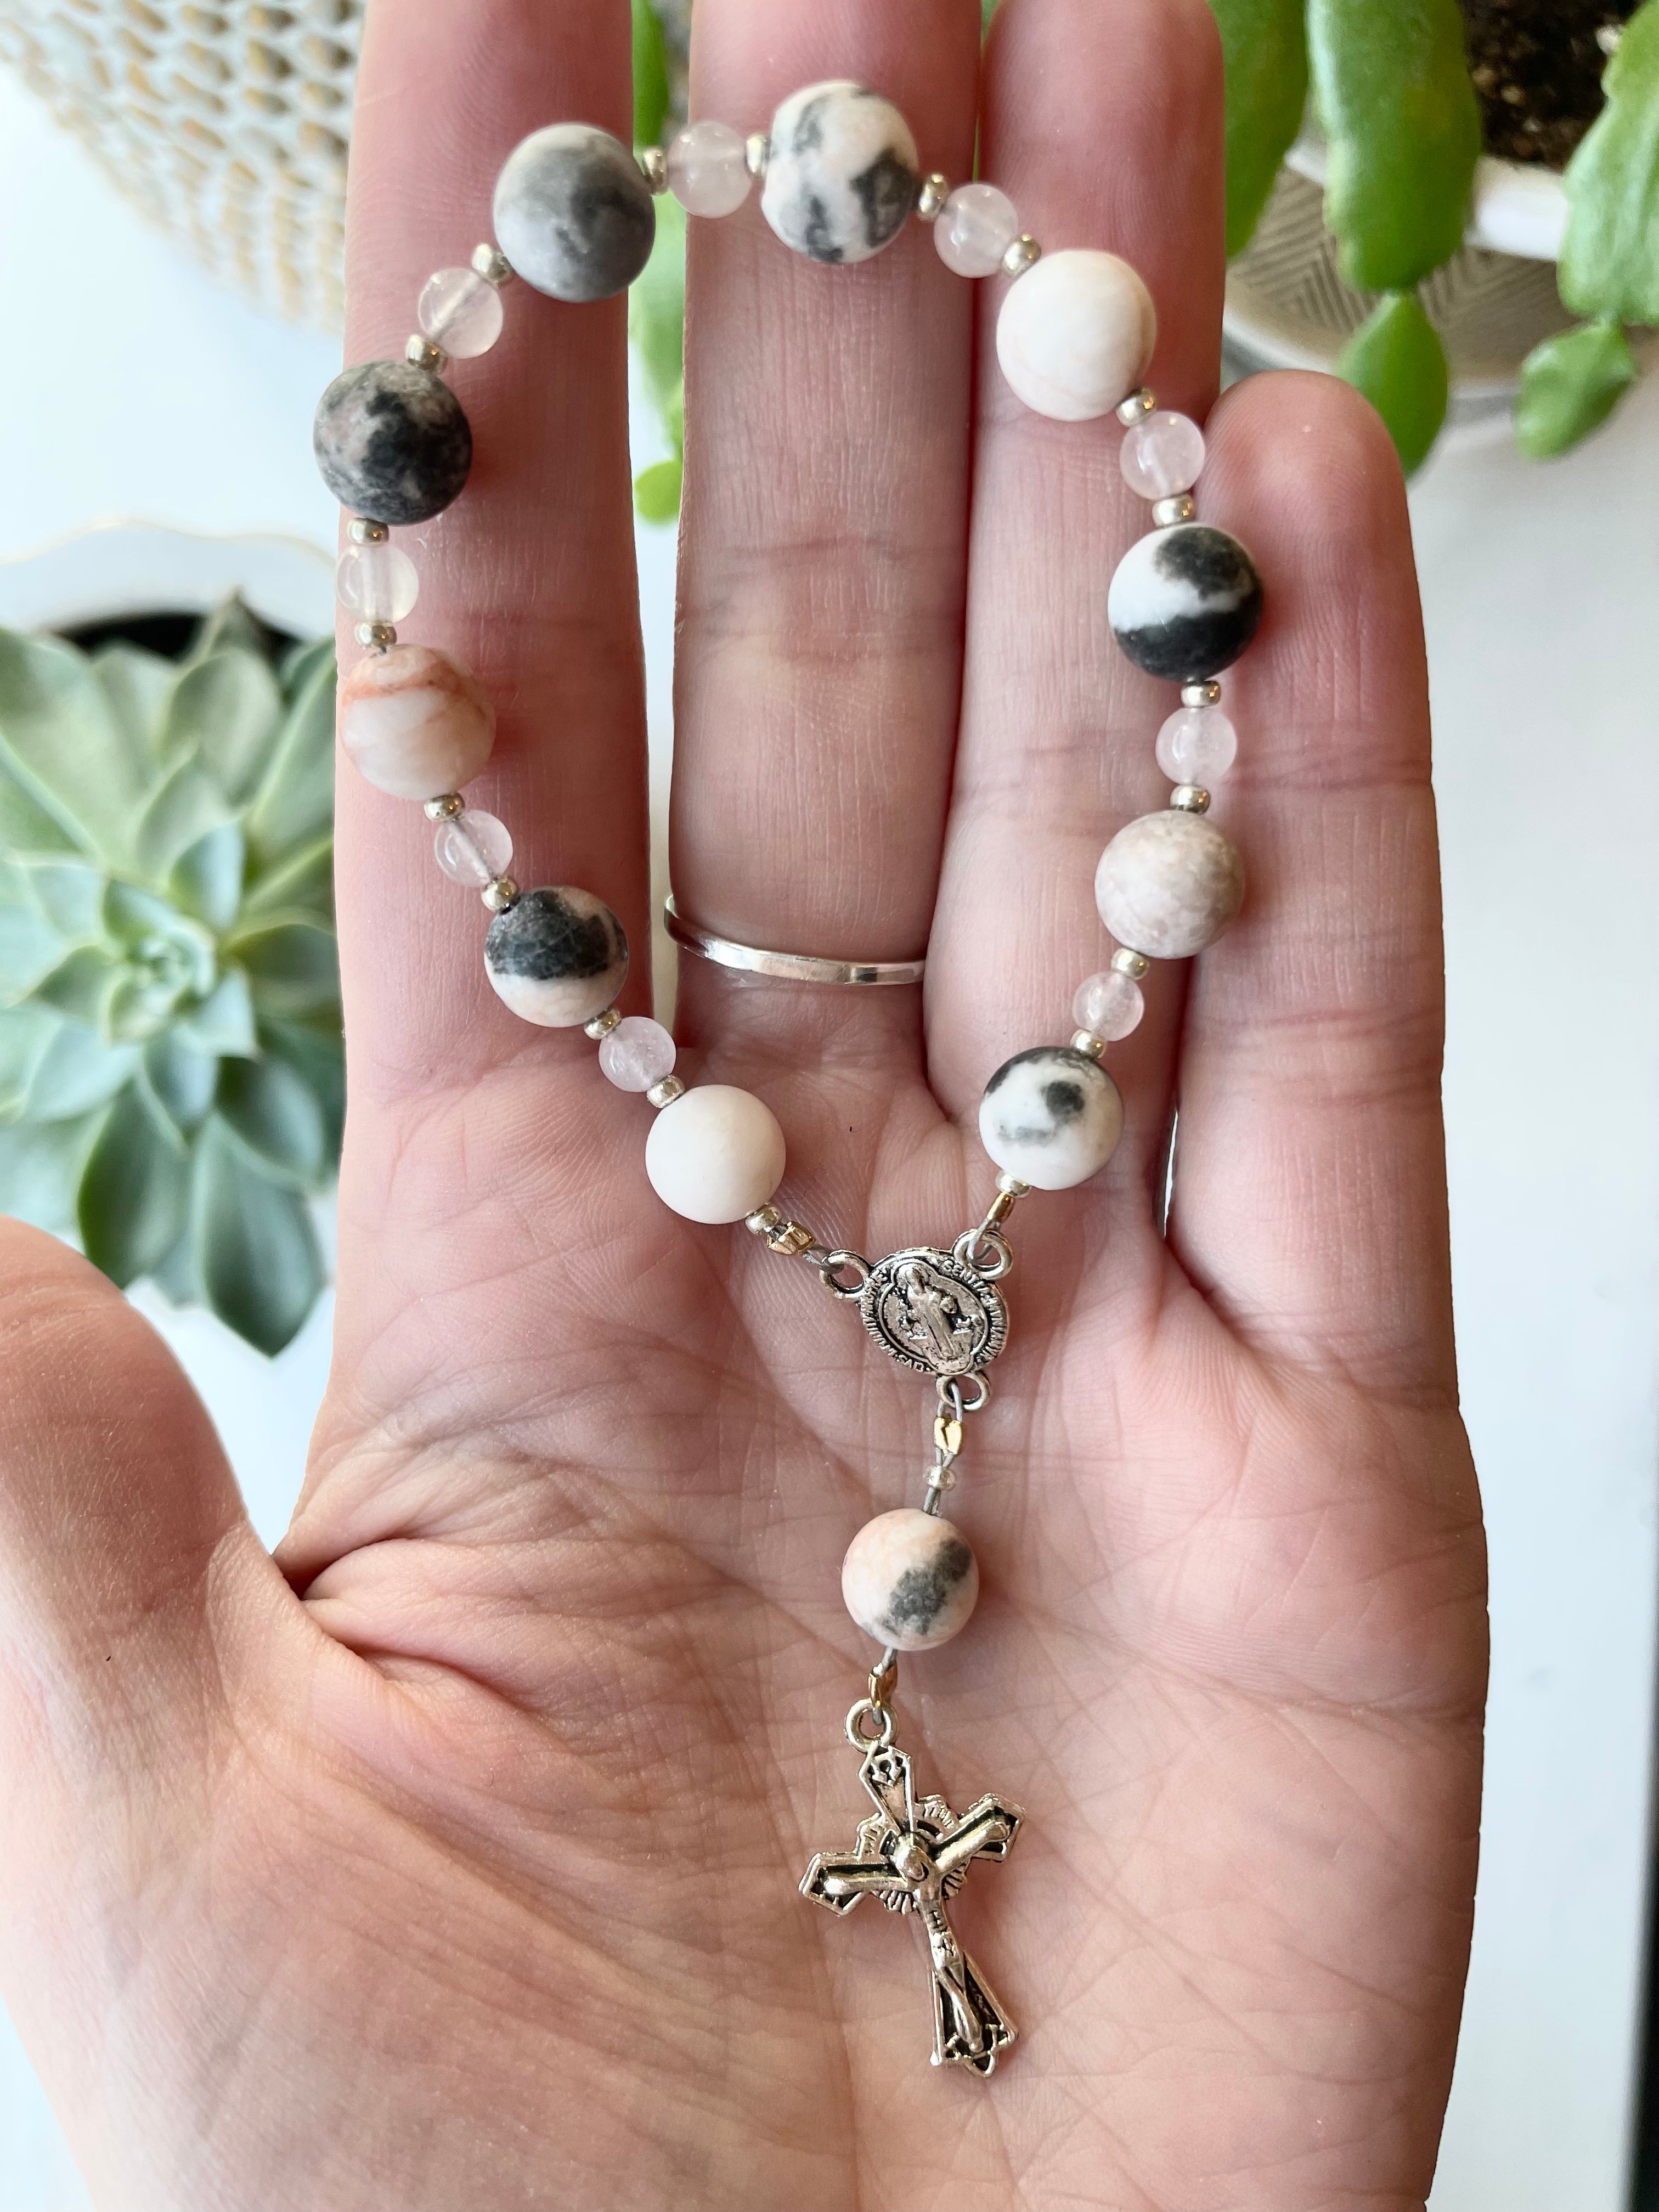 Mini Car Rosary – Rosaschi Rosaries